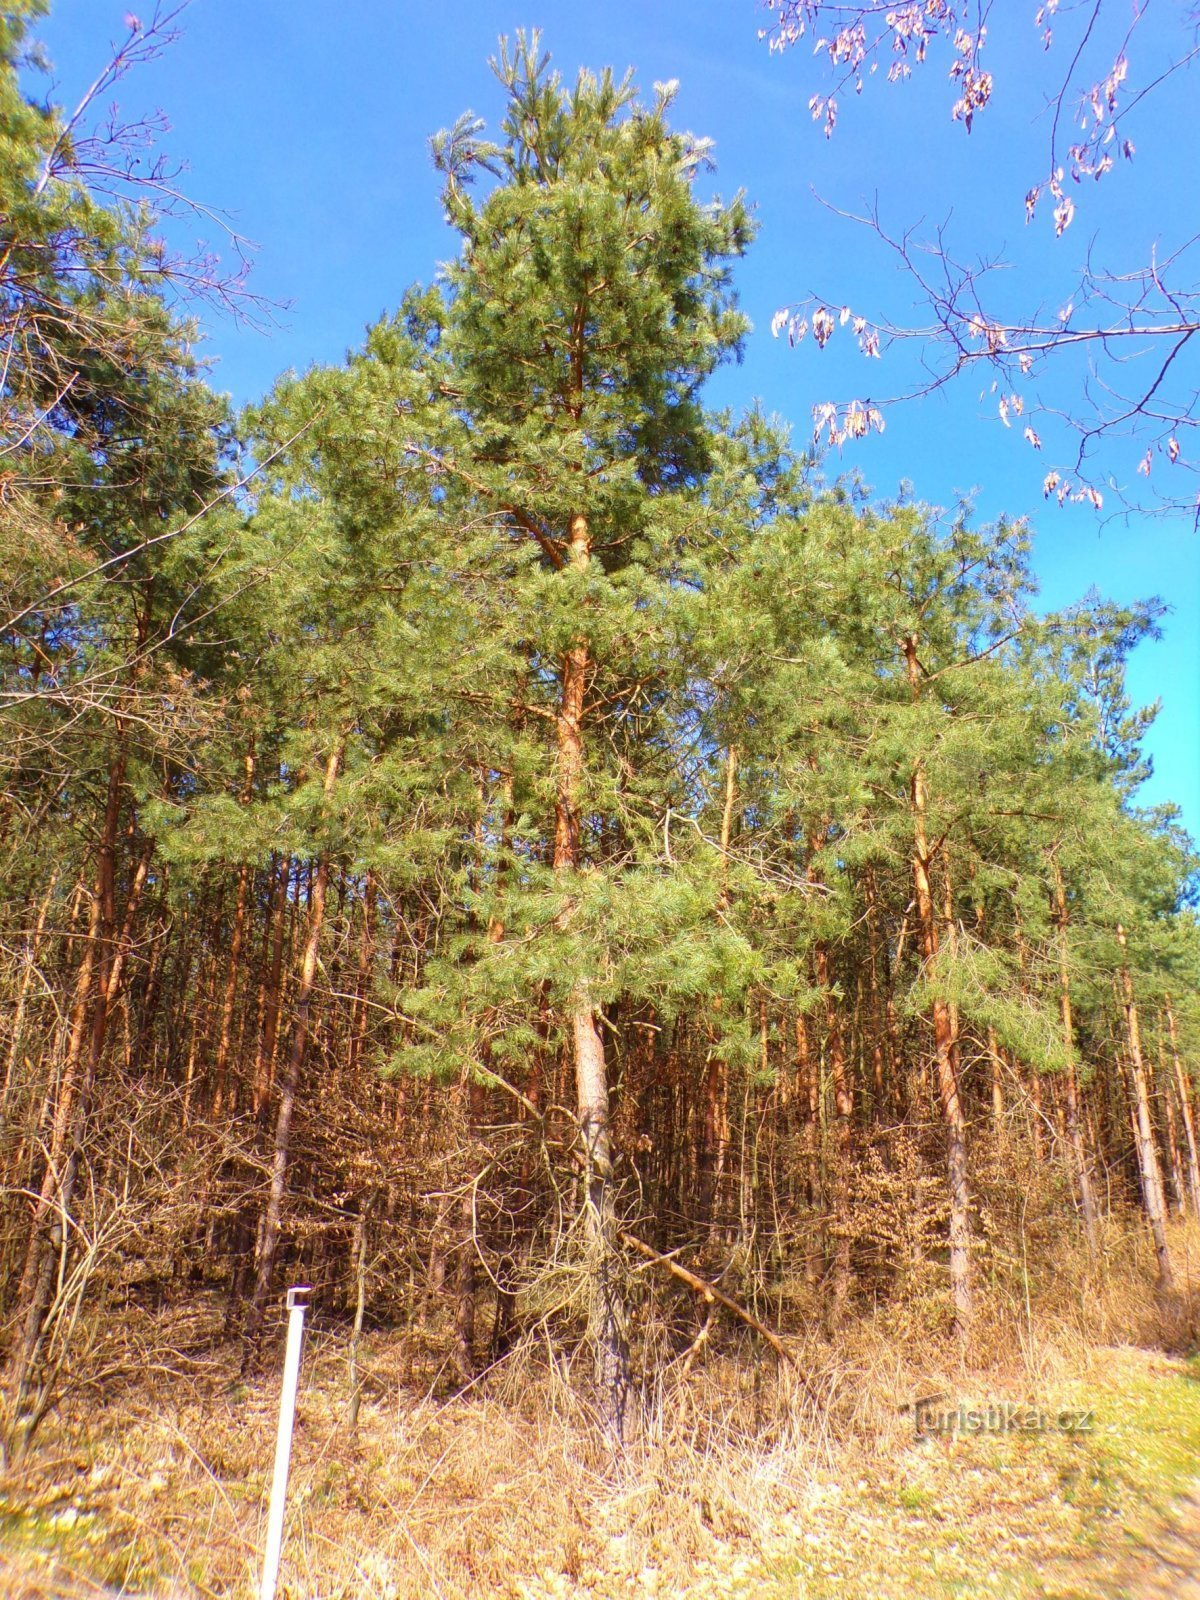 Těchlovice forest (Těchlovice, 27.3.2022)